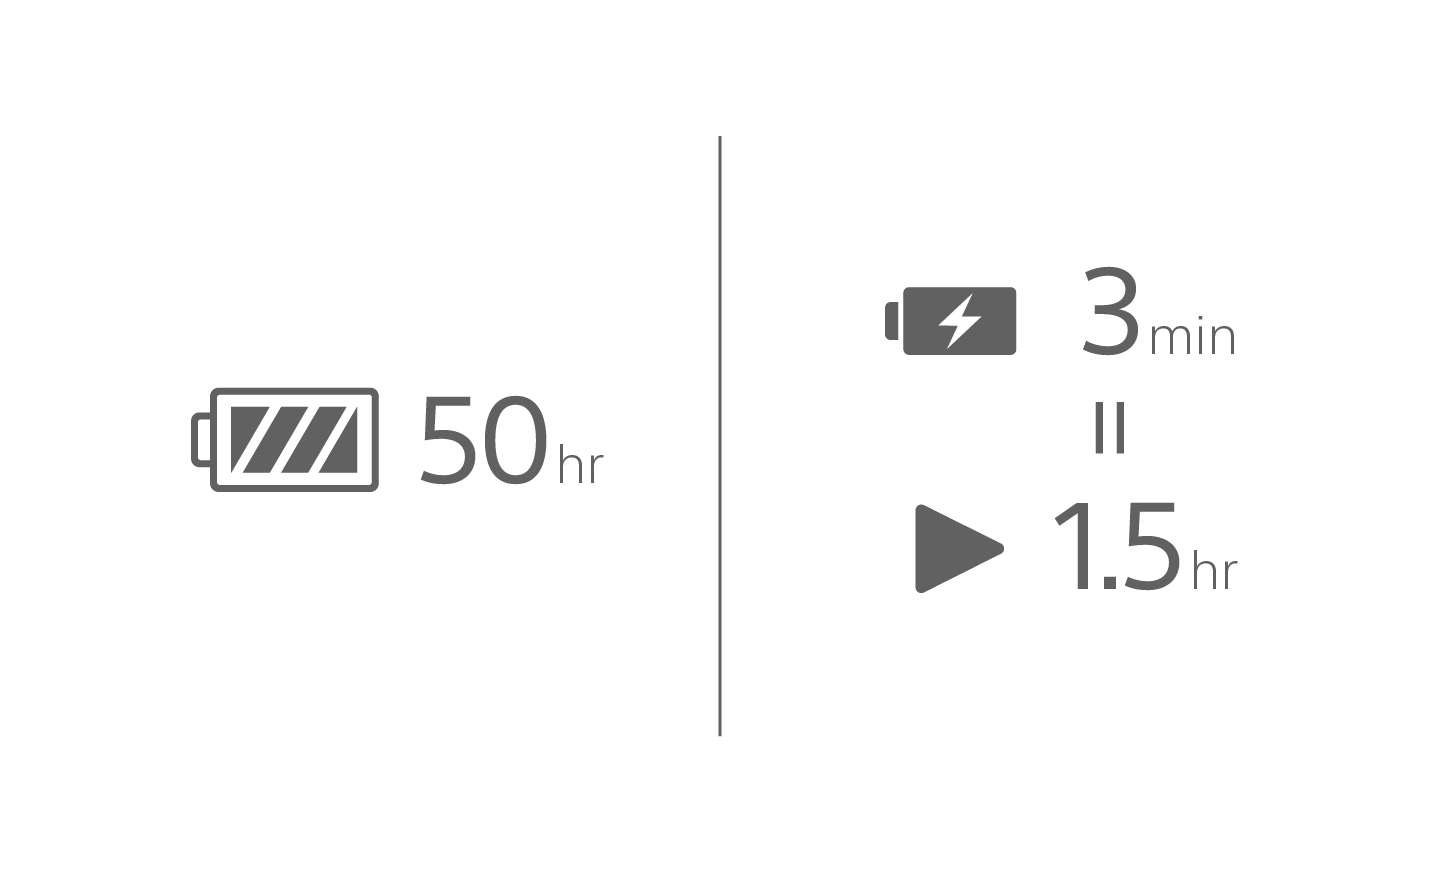 標註 50 小時文字的電池圖示、充電中的電池圖示，上面有 3 分鐘的文字，標註 1.5 小時的播放圖示